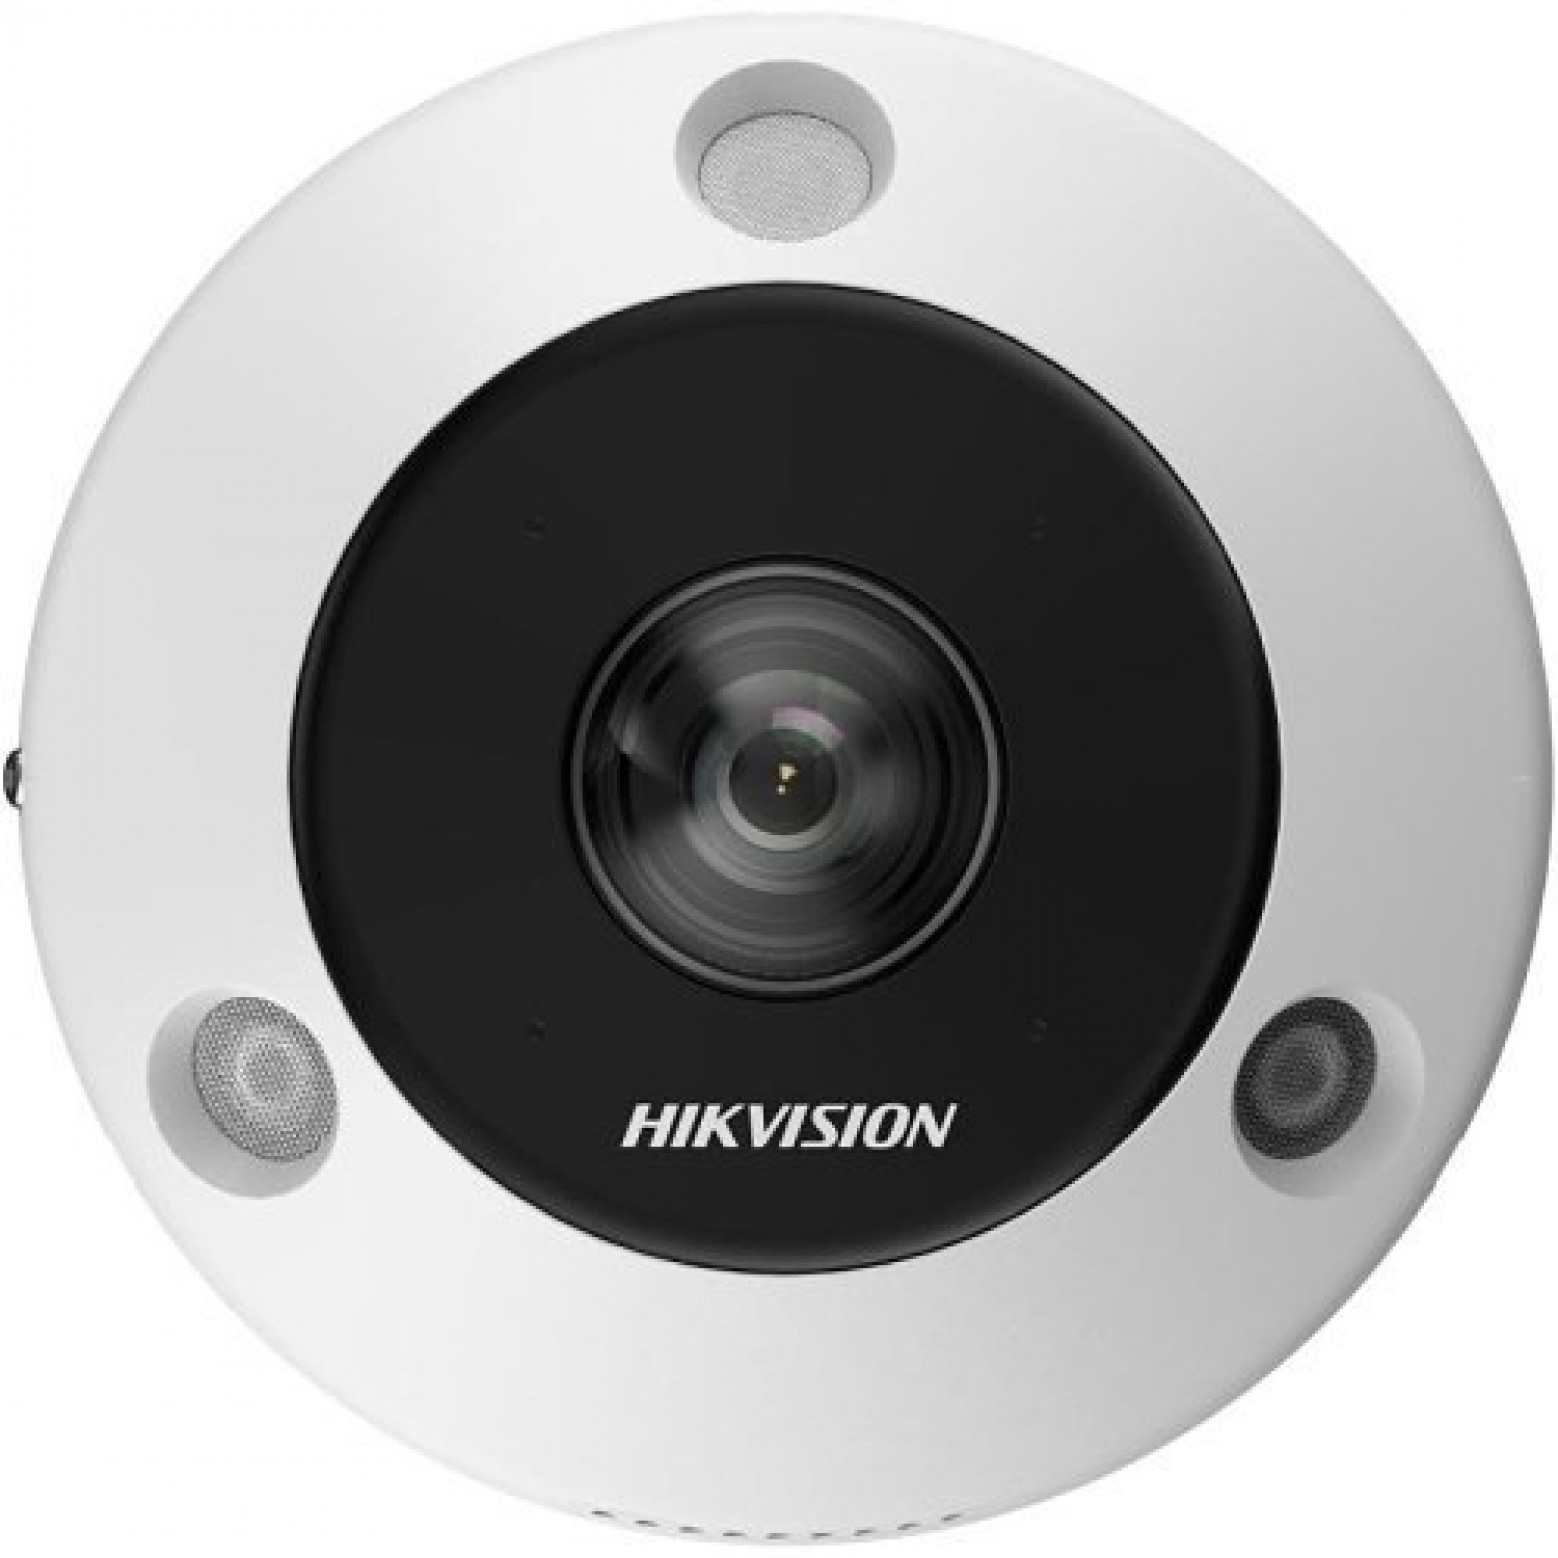 Hikvision - DS-2CD6365G1-IVS - DeepinView - Olho de peixe - Lente de 1.16MM - 6MP - IP - Wit